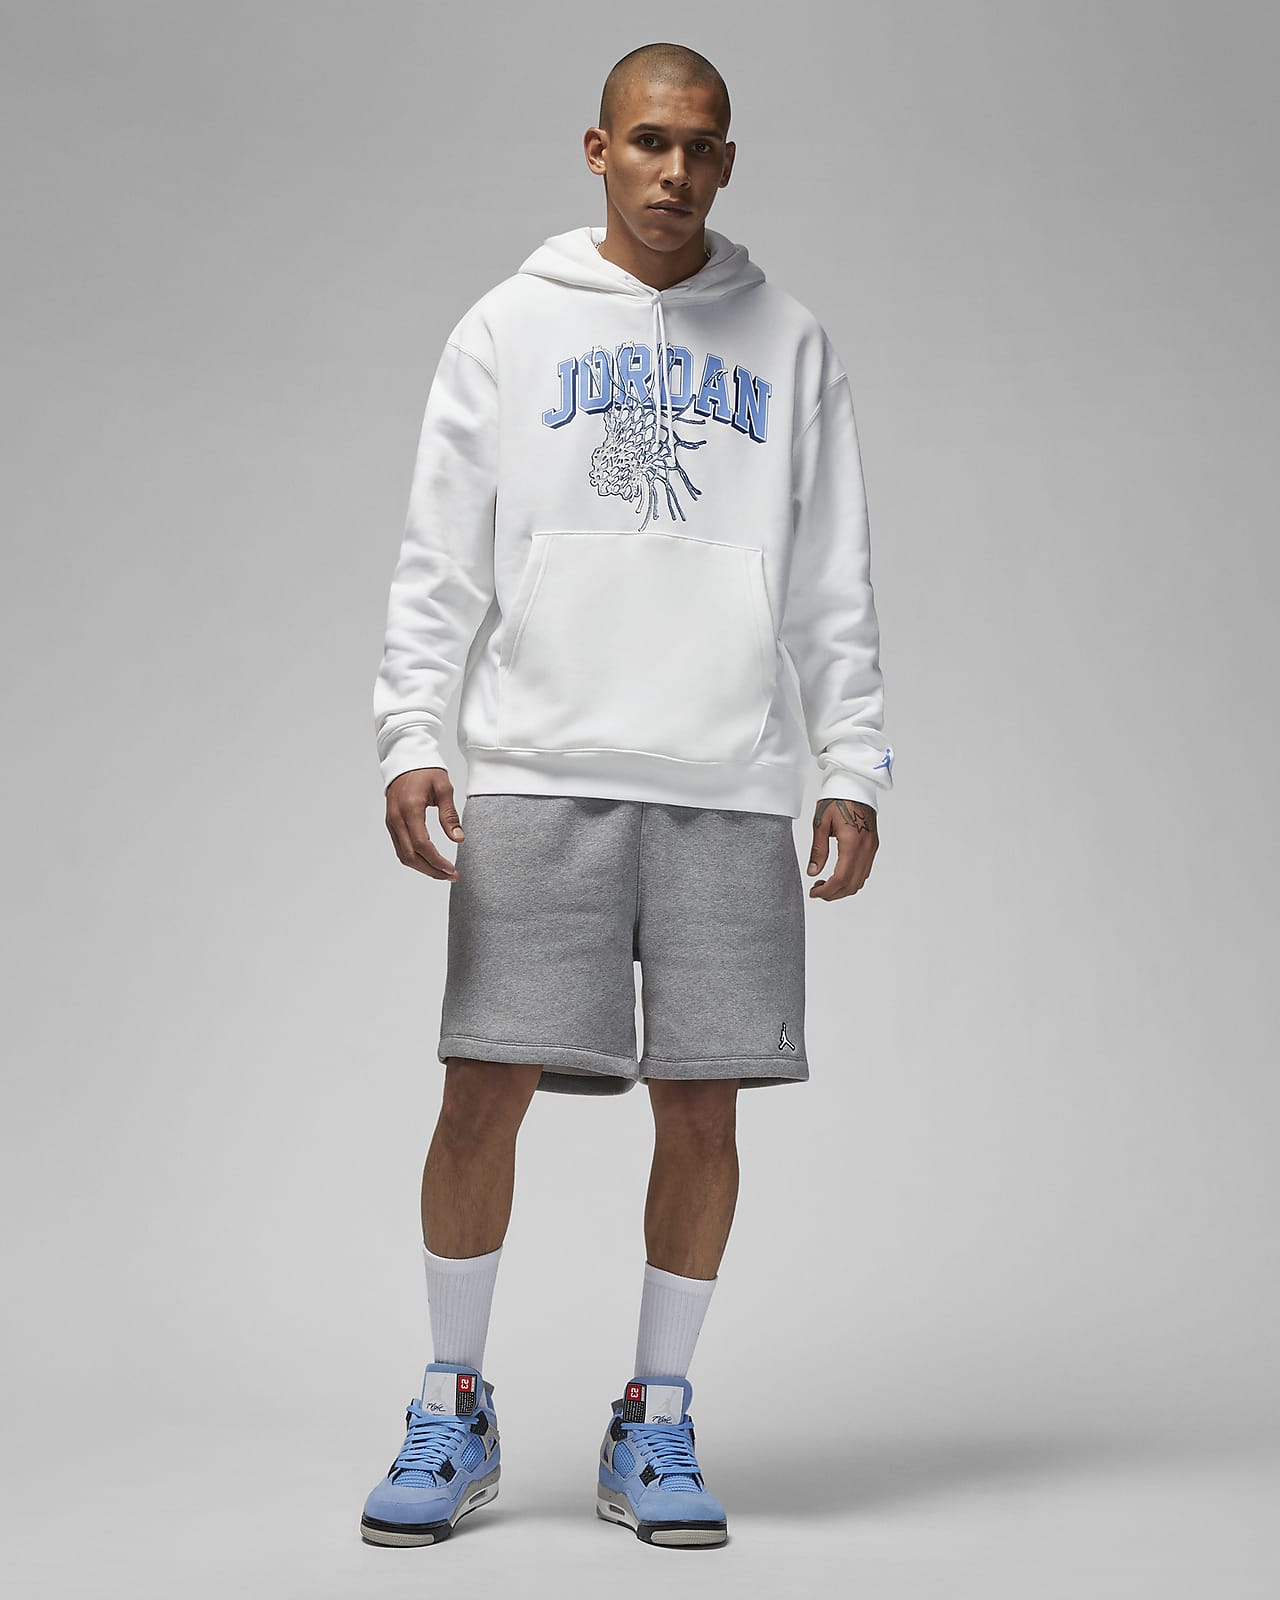 Jordan Sneaker School Men's Pullover Hoodie. Nike LU